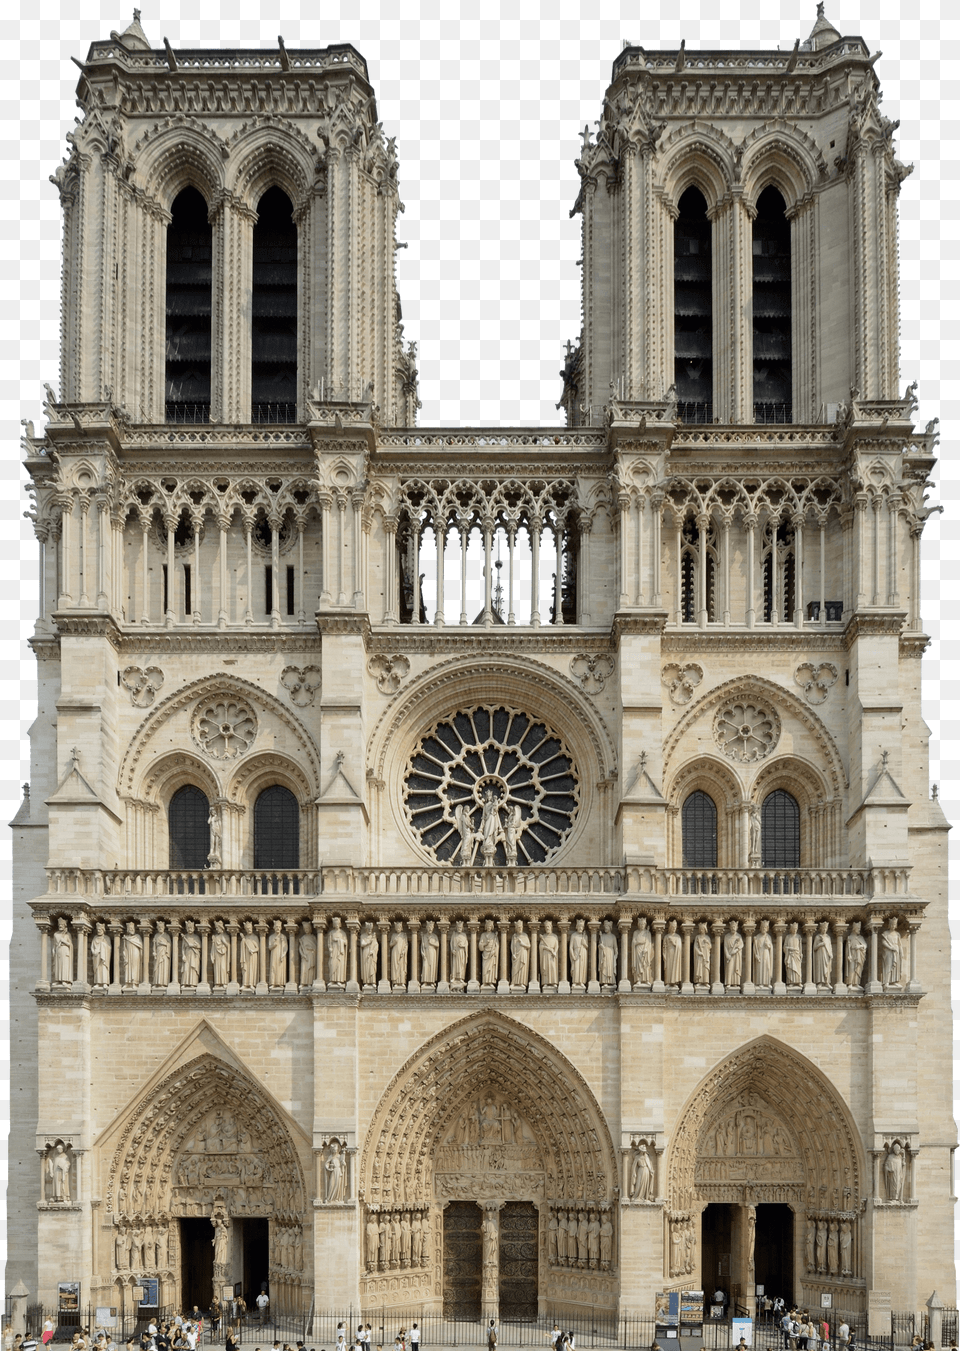 Clip Art Notre Dame Trivium Art Notre Dame De Paris, Arch, Architecture, Building, Cathedral Png Image